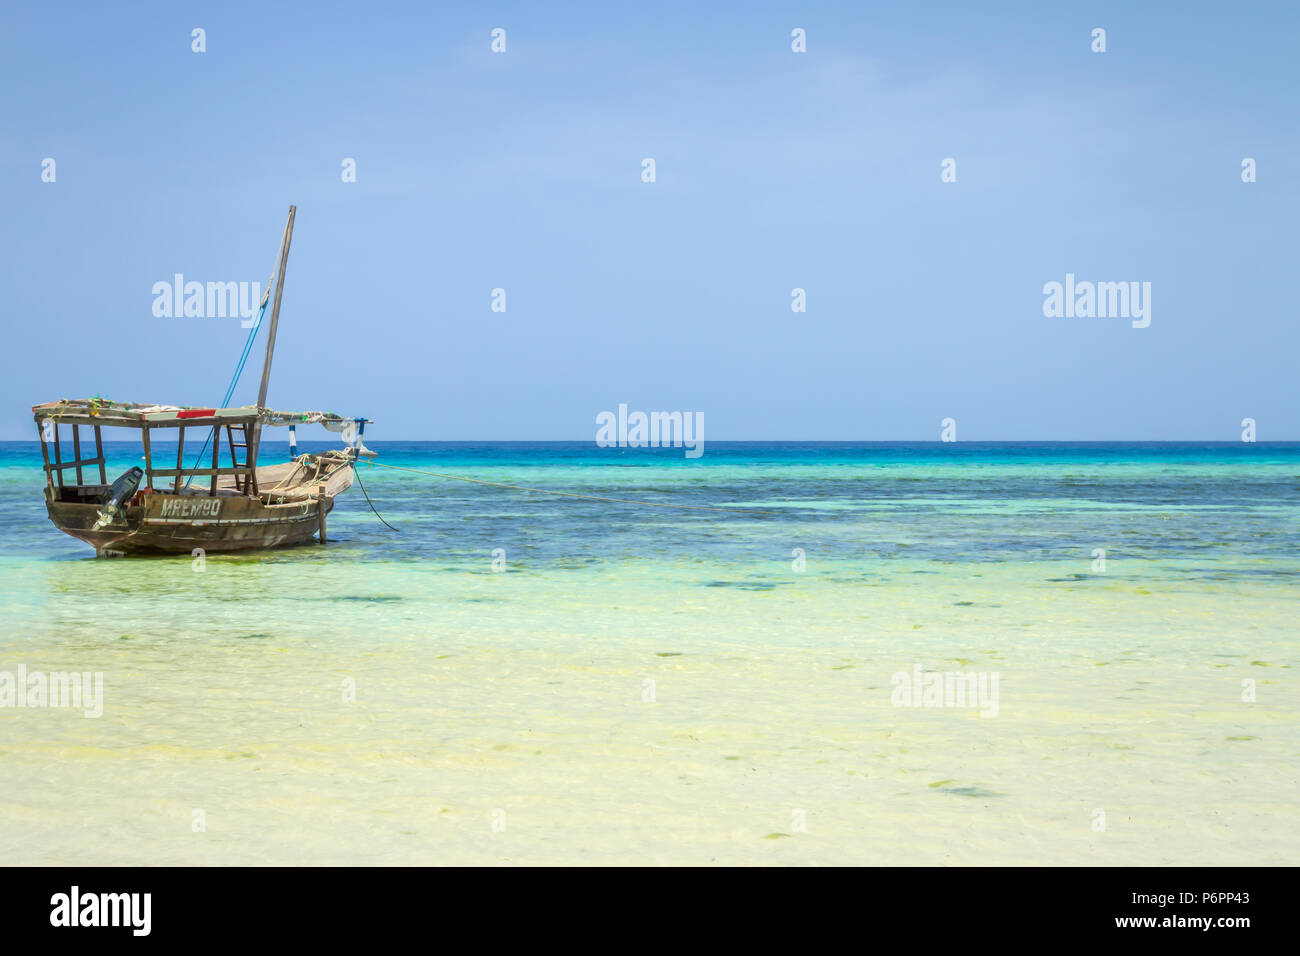 La pesca di Zanzibar dhow tradizionale barca a vela cordato con la bassa marea sulla costa di Zanzibar Foto Stock